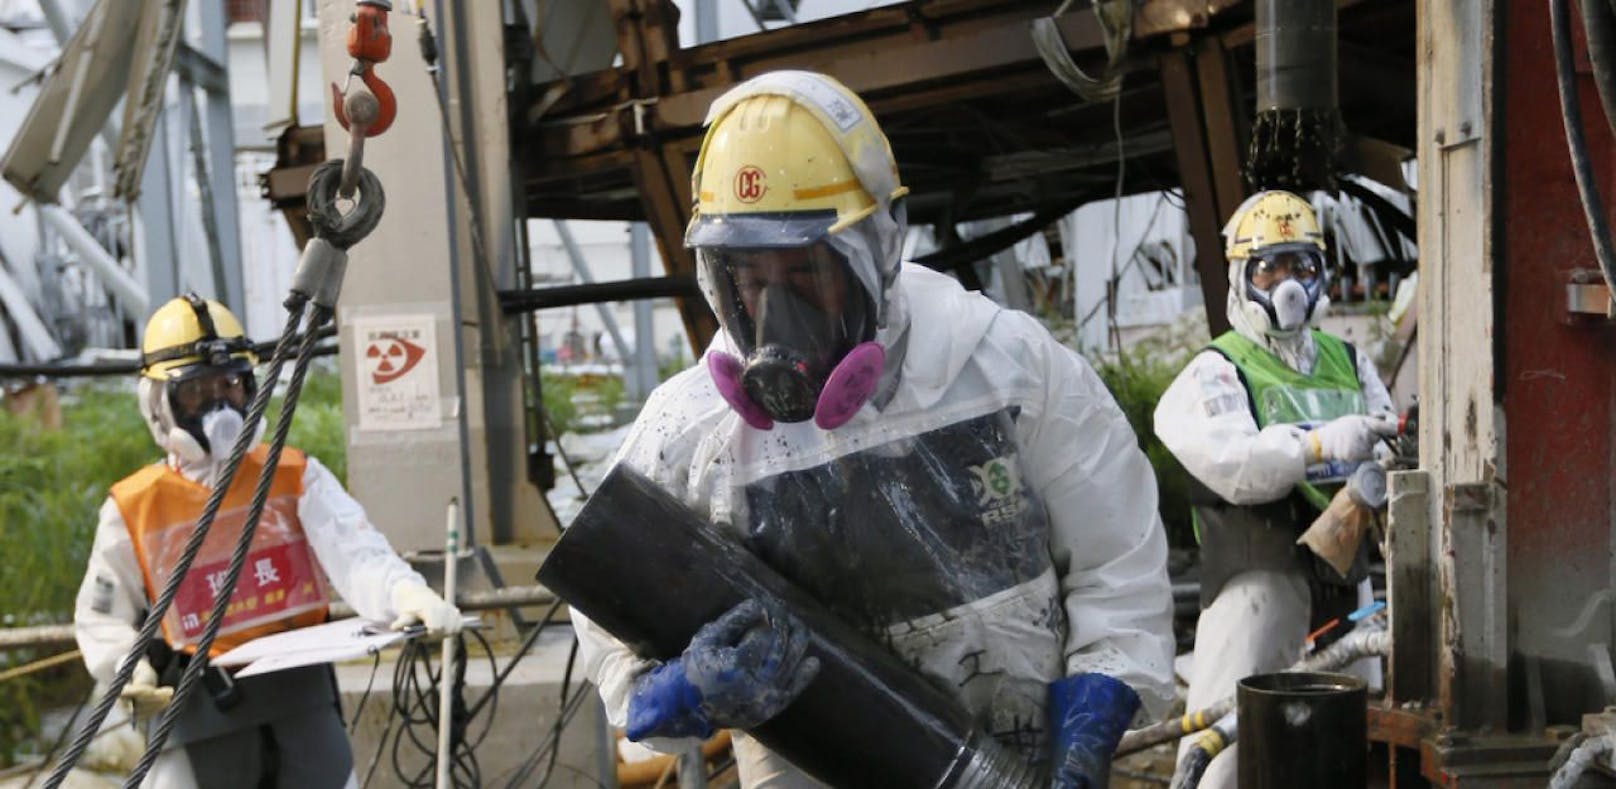 Auch Jahre nach der Katastrophe verursacht die Atomruine von Fukushima Probleme. (Archivbild)